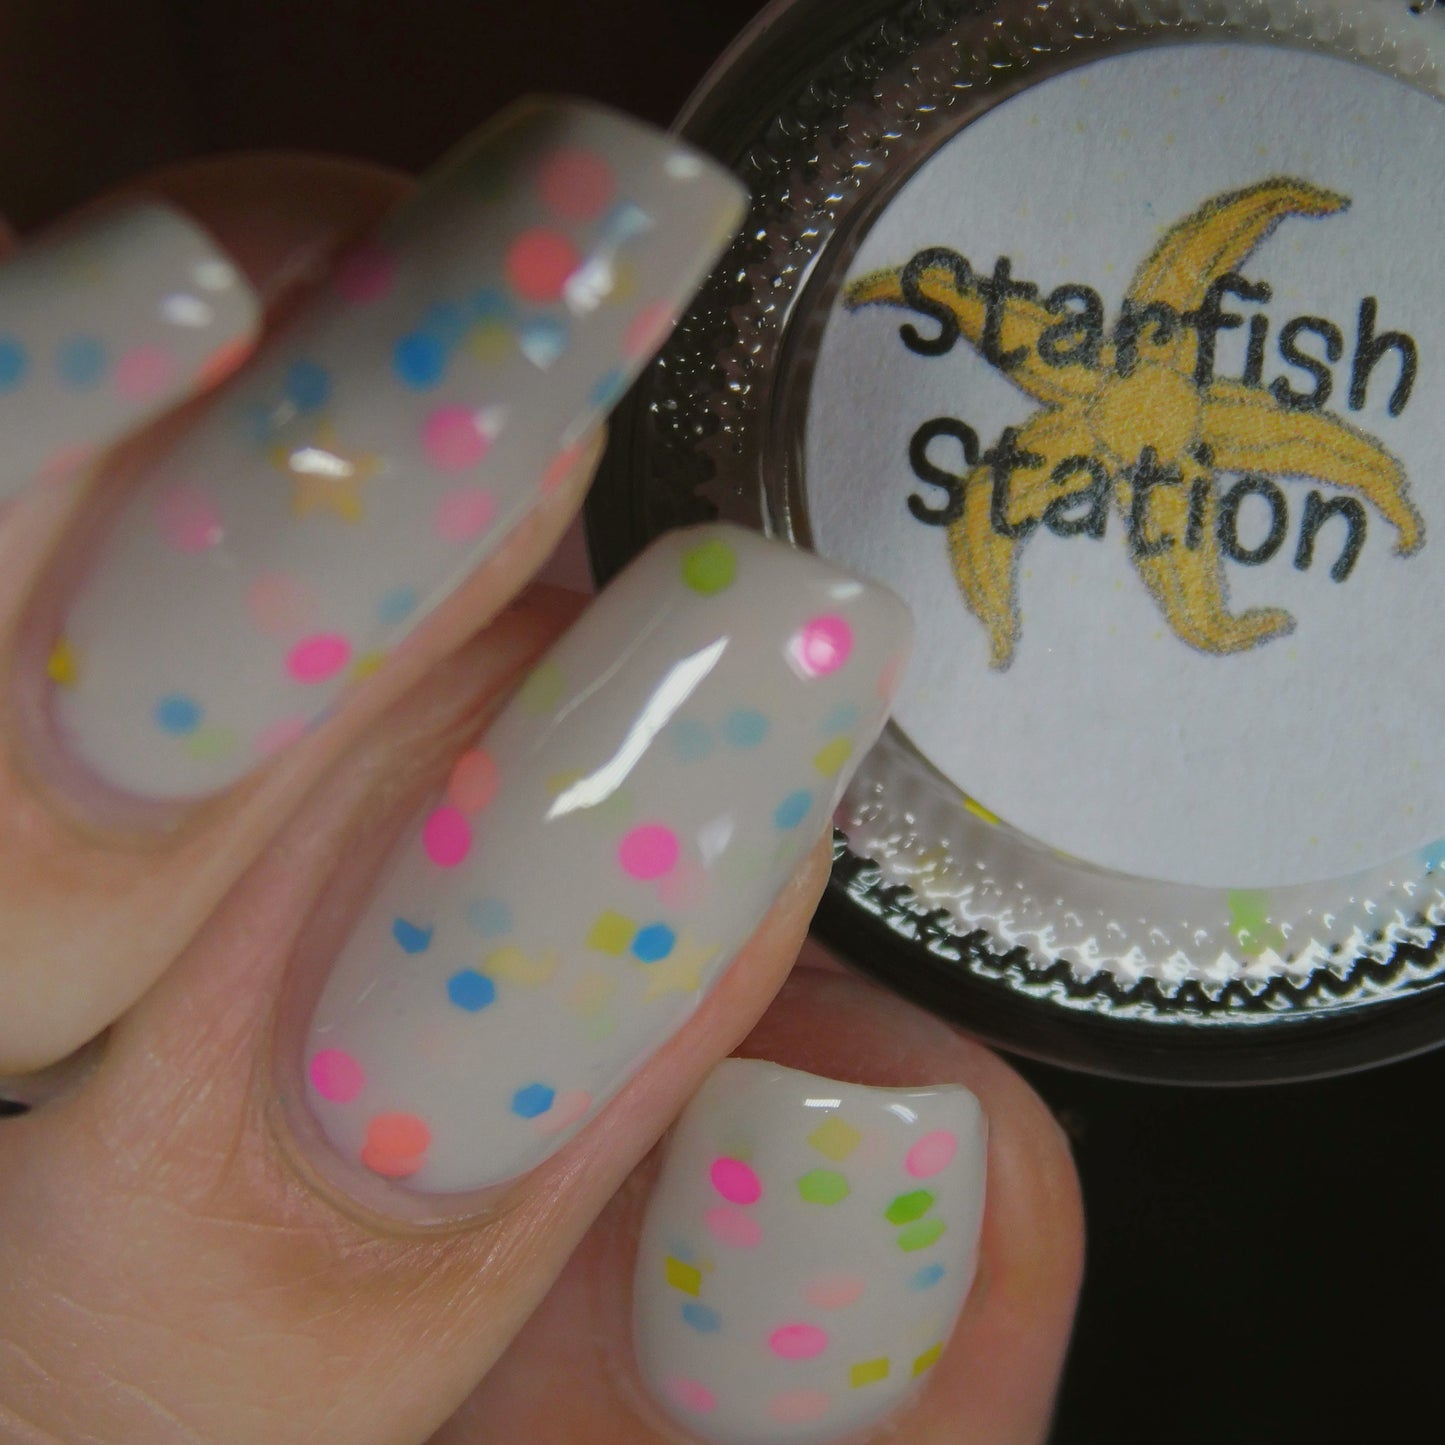 Starfish Station